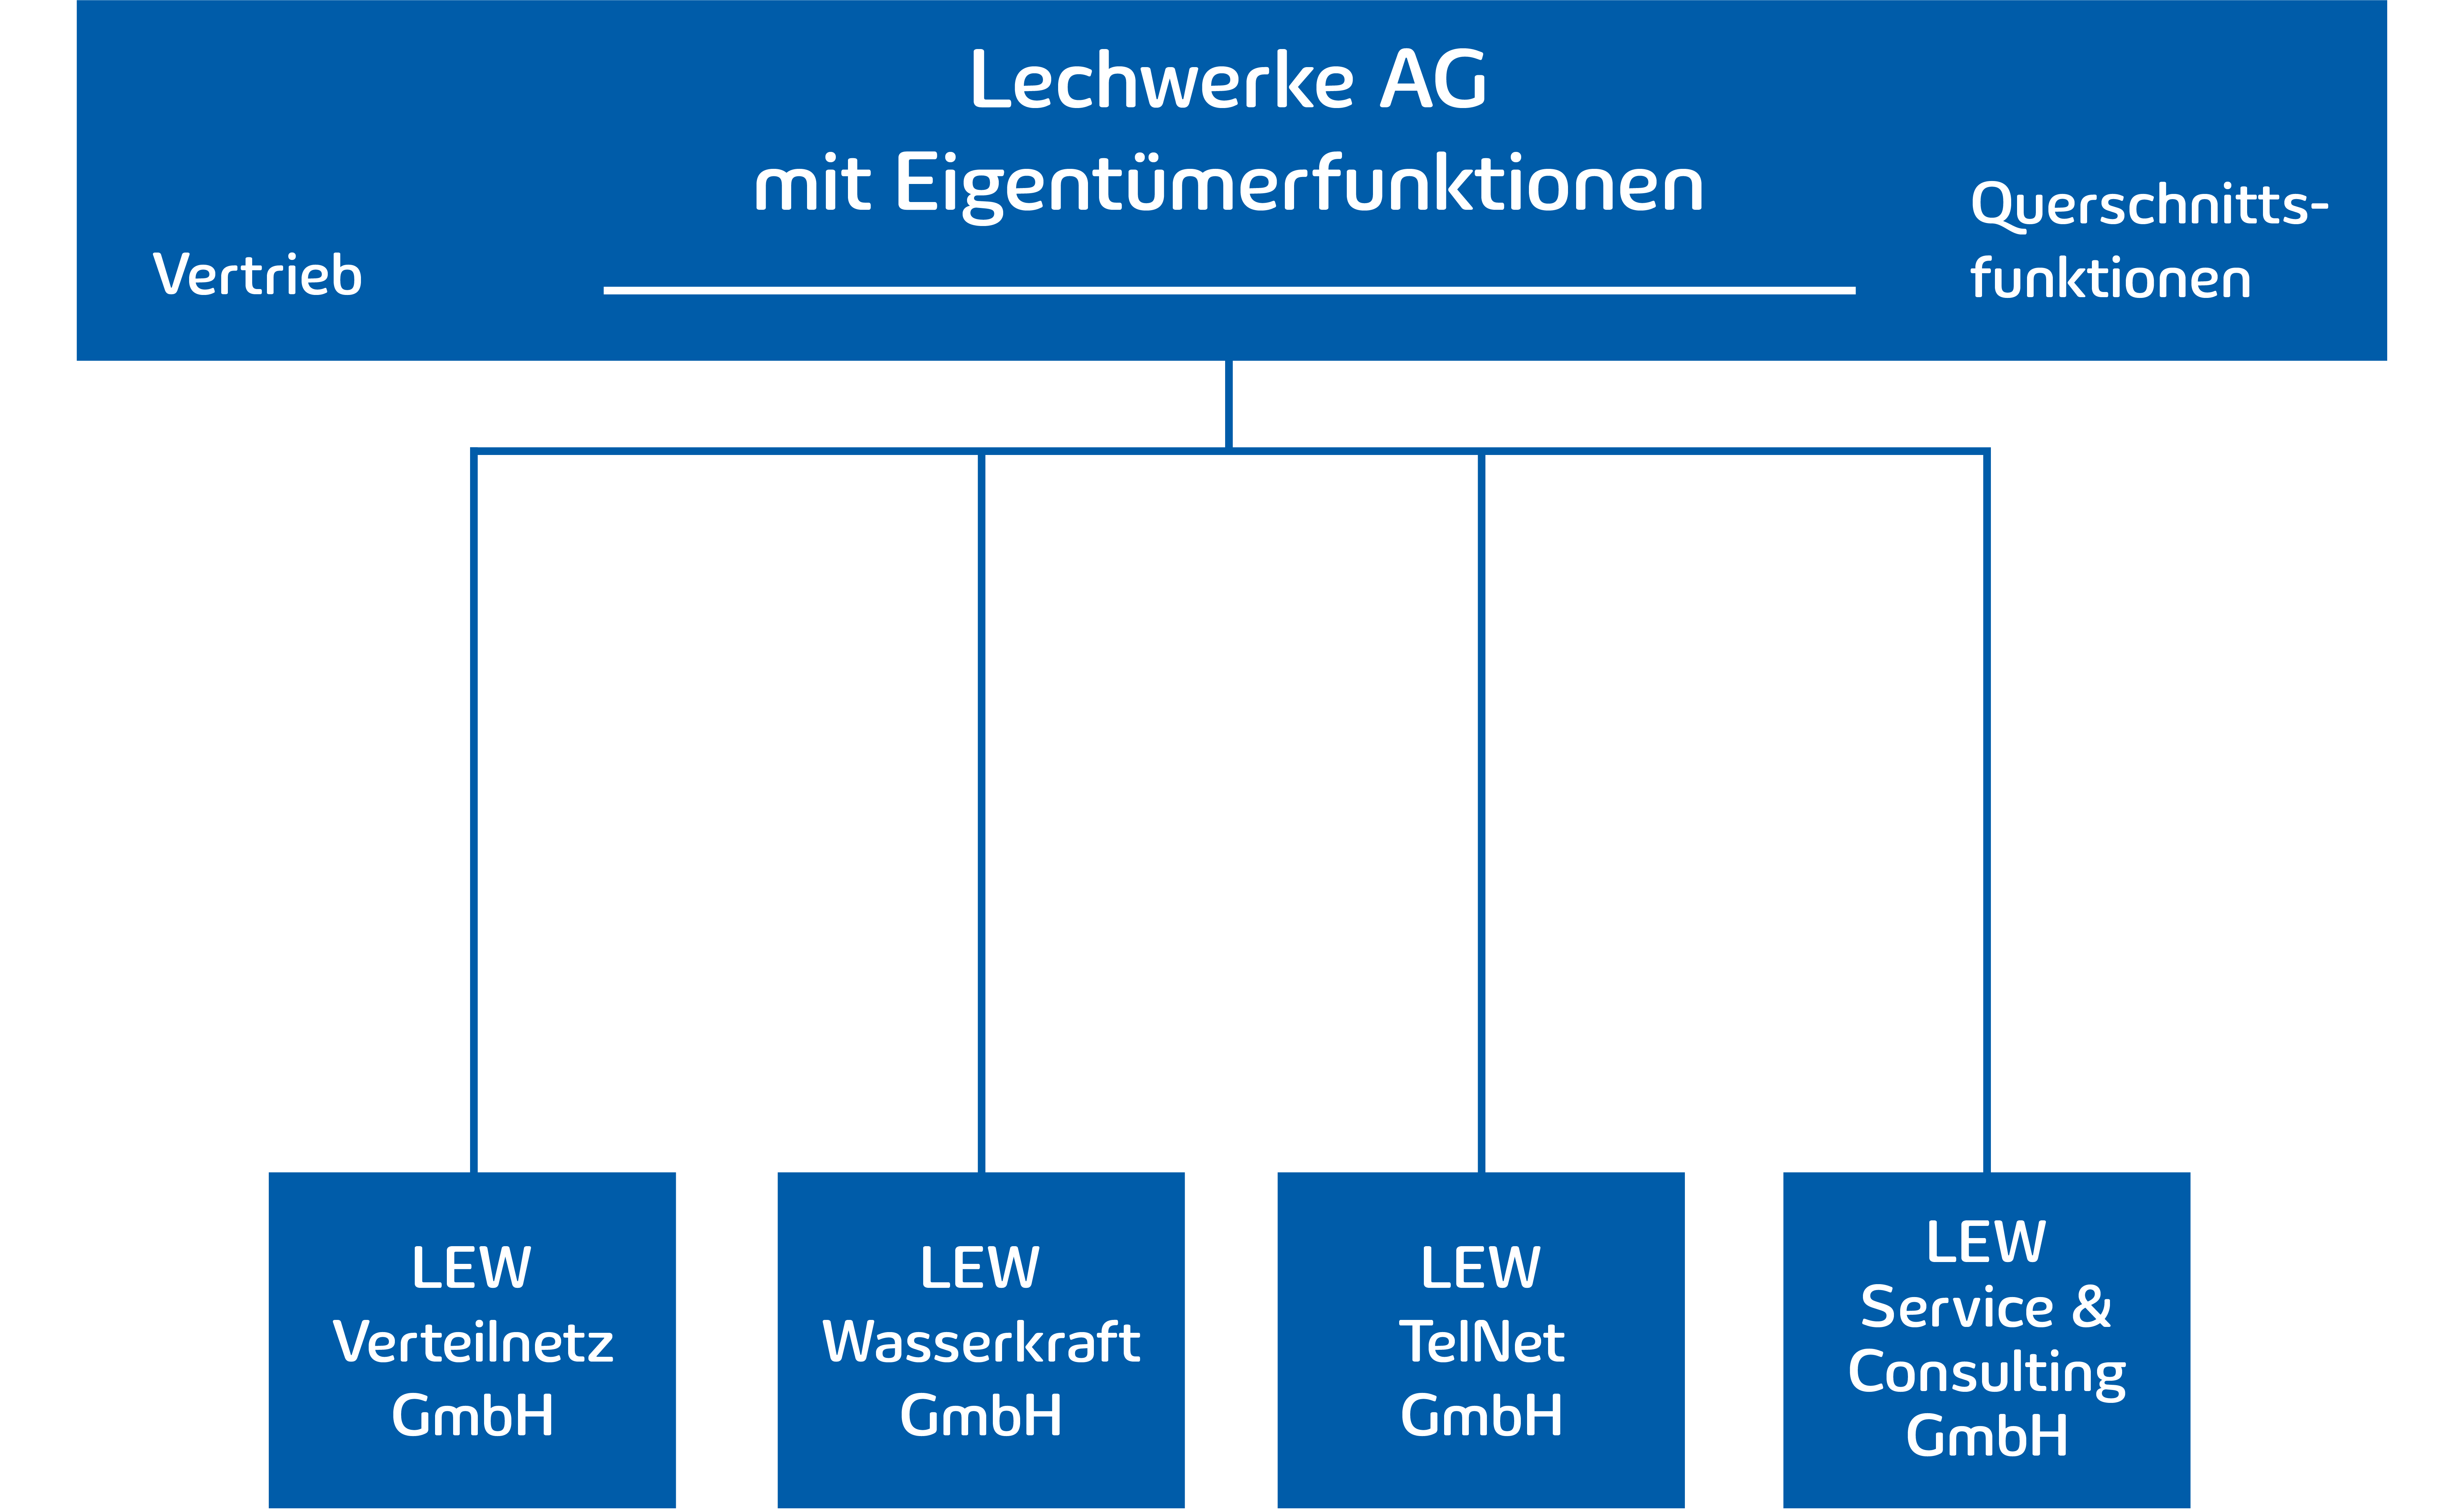 Organigramm der LEW-Gruppe.